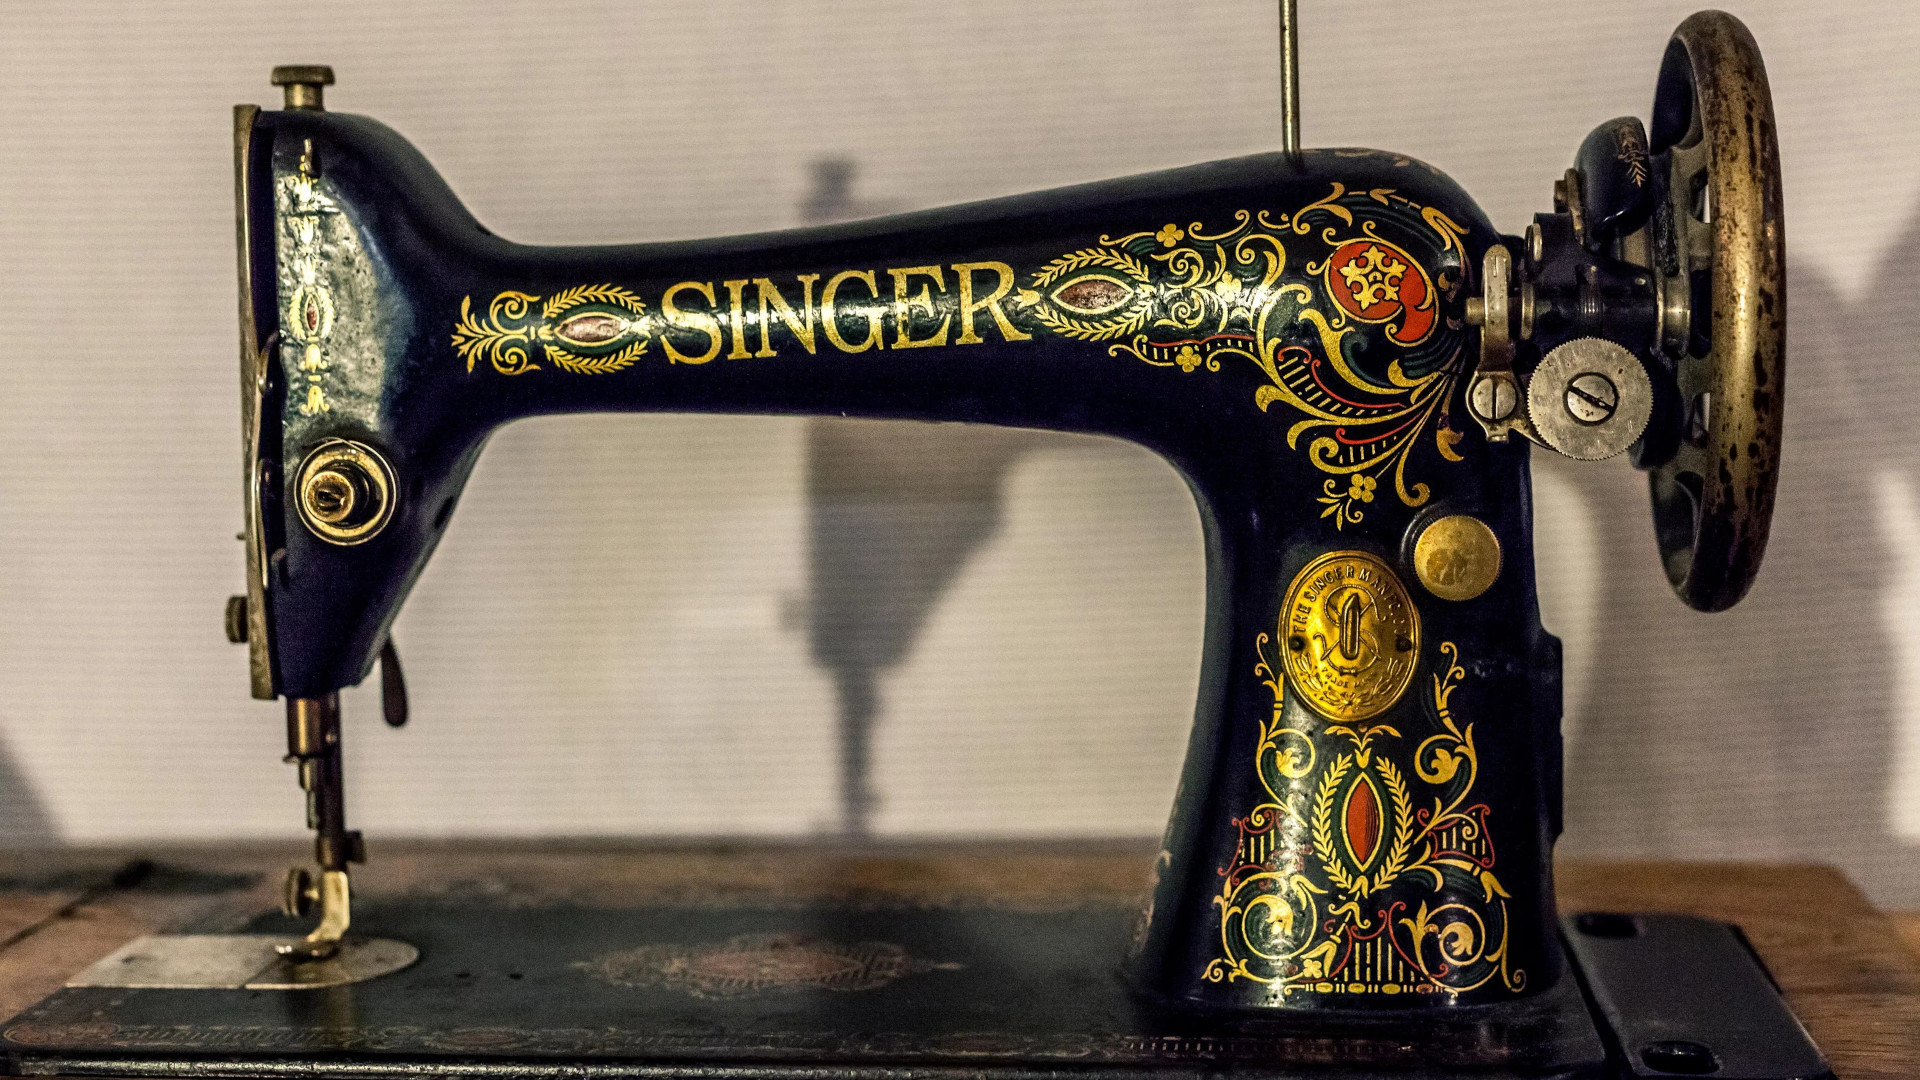 1894 singer sewing machine